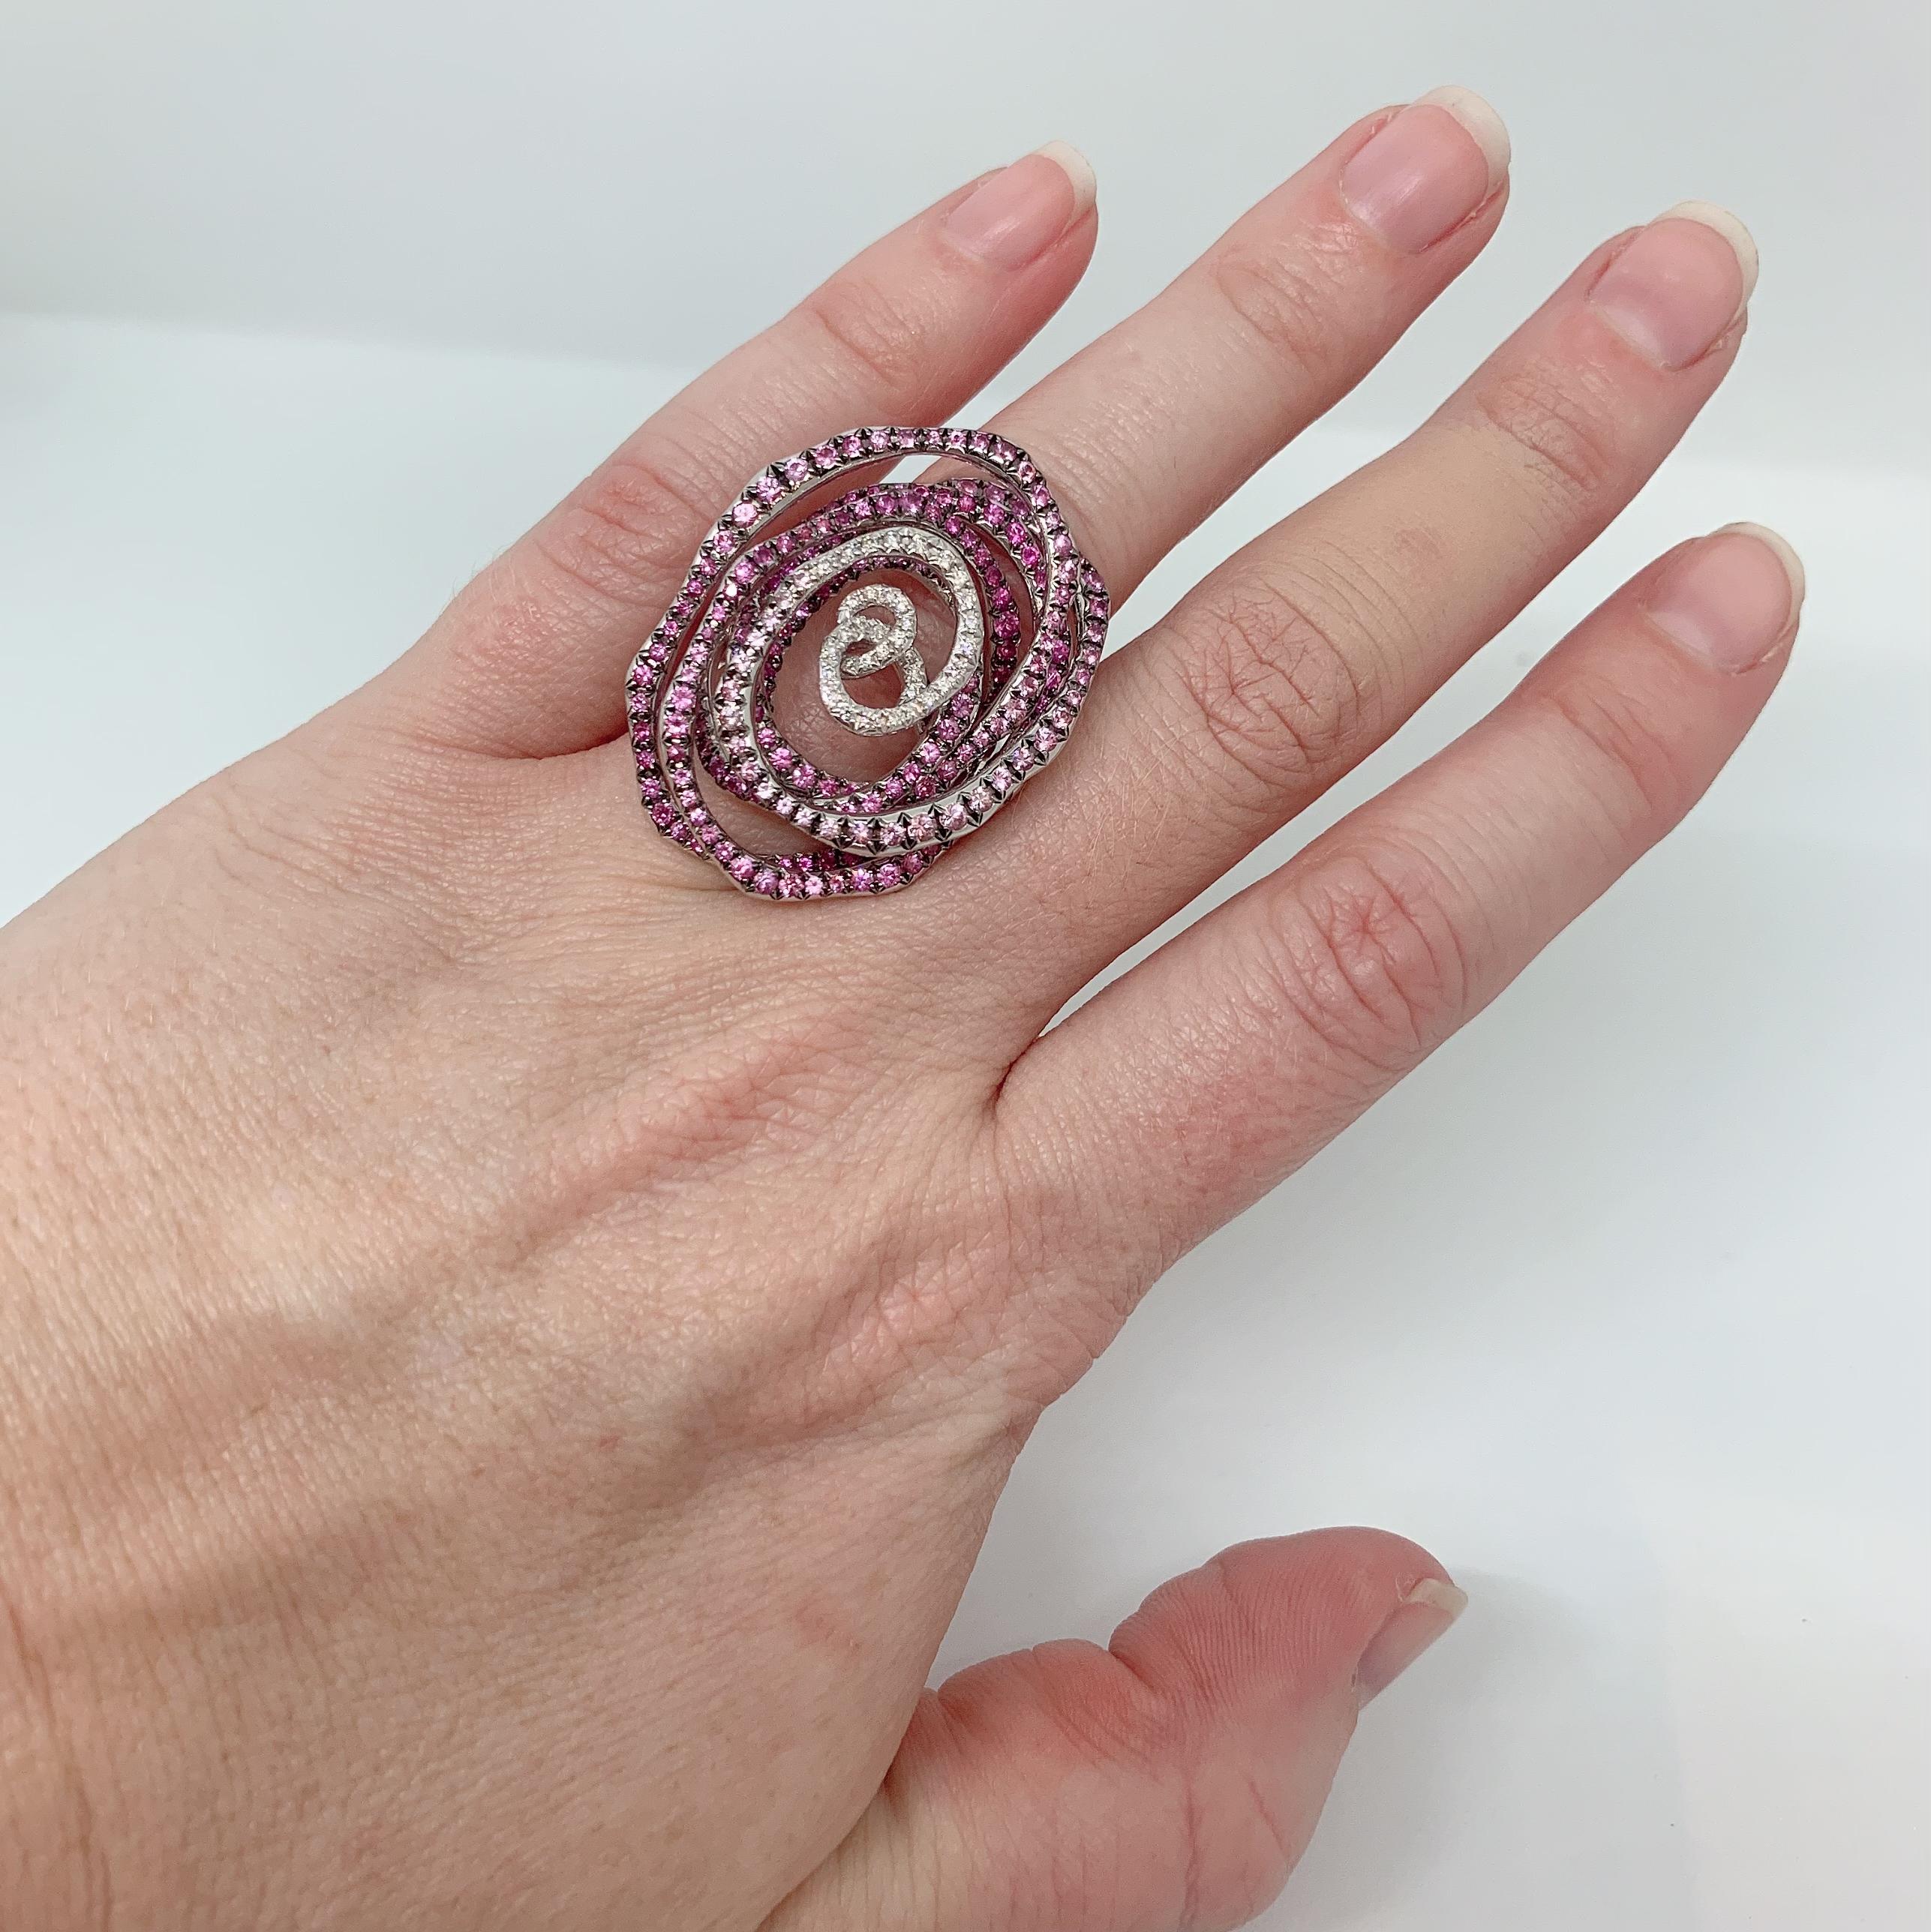 Margot McKinney 18 Karat White Gold Swirl Ring set with 0.27 carat White Diamonds and 3.14 carat Pink Sapphires.  Ring Size USA 6.5 (UK/AU Size M).
